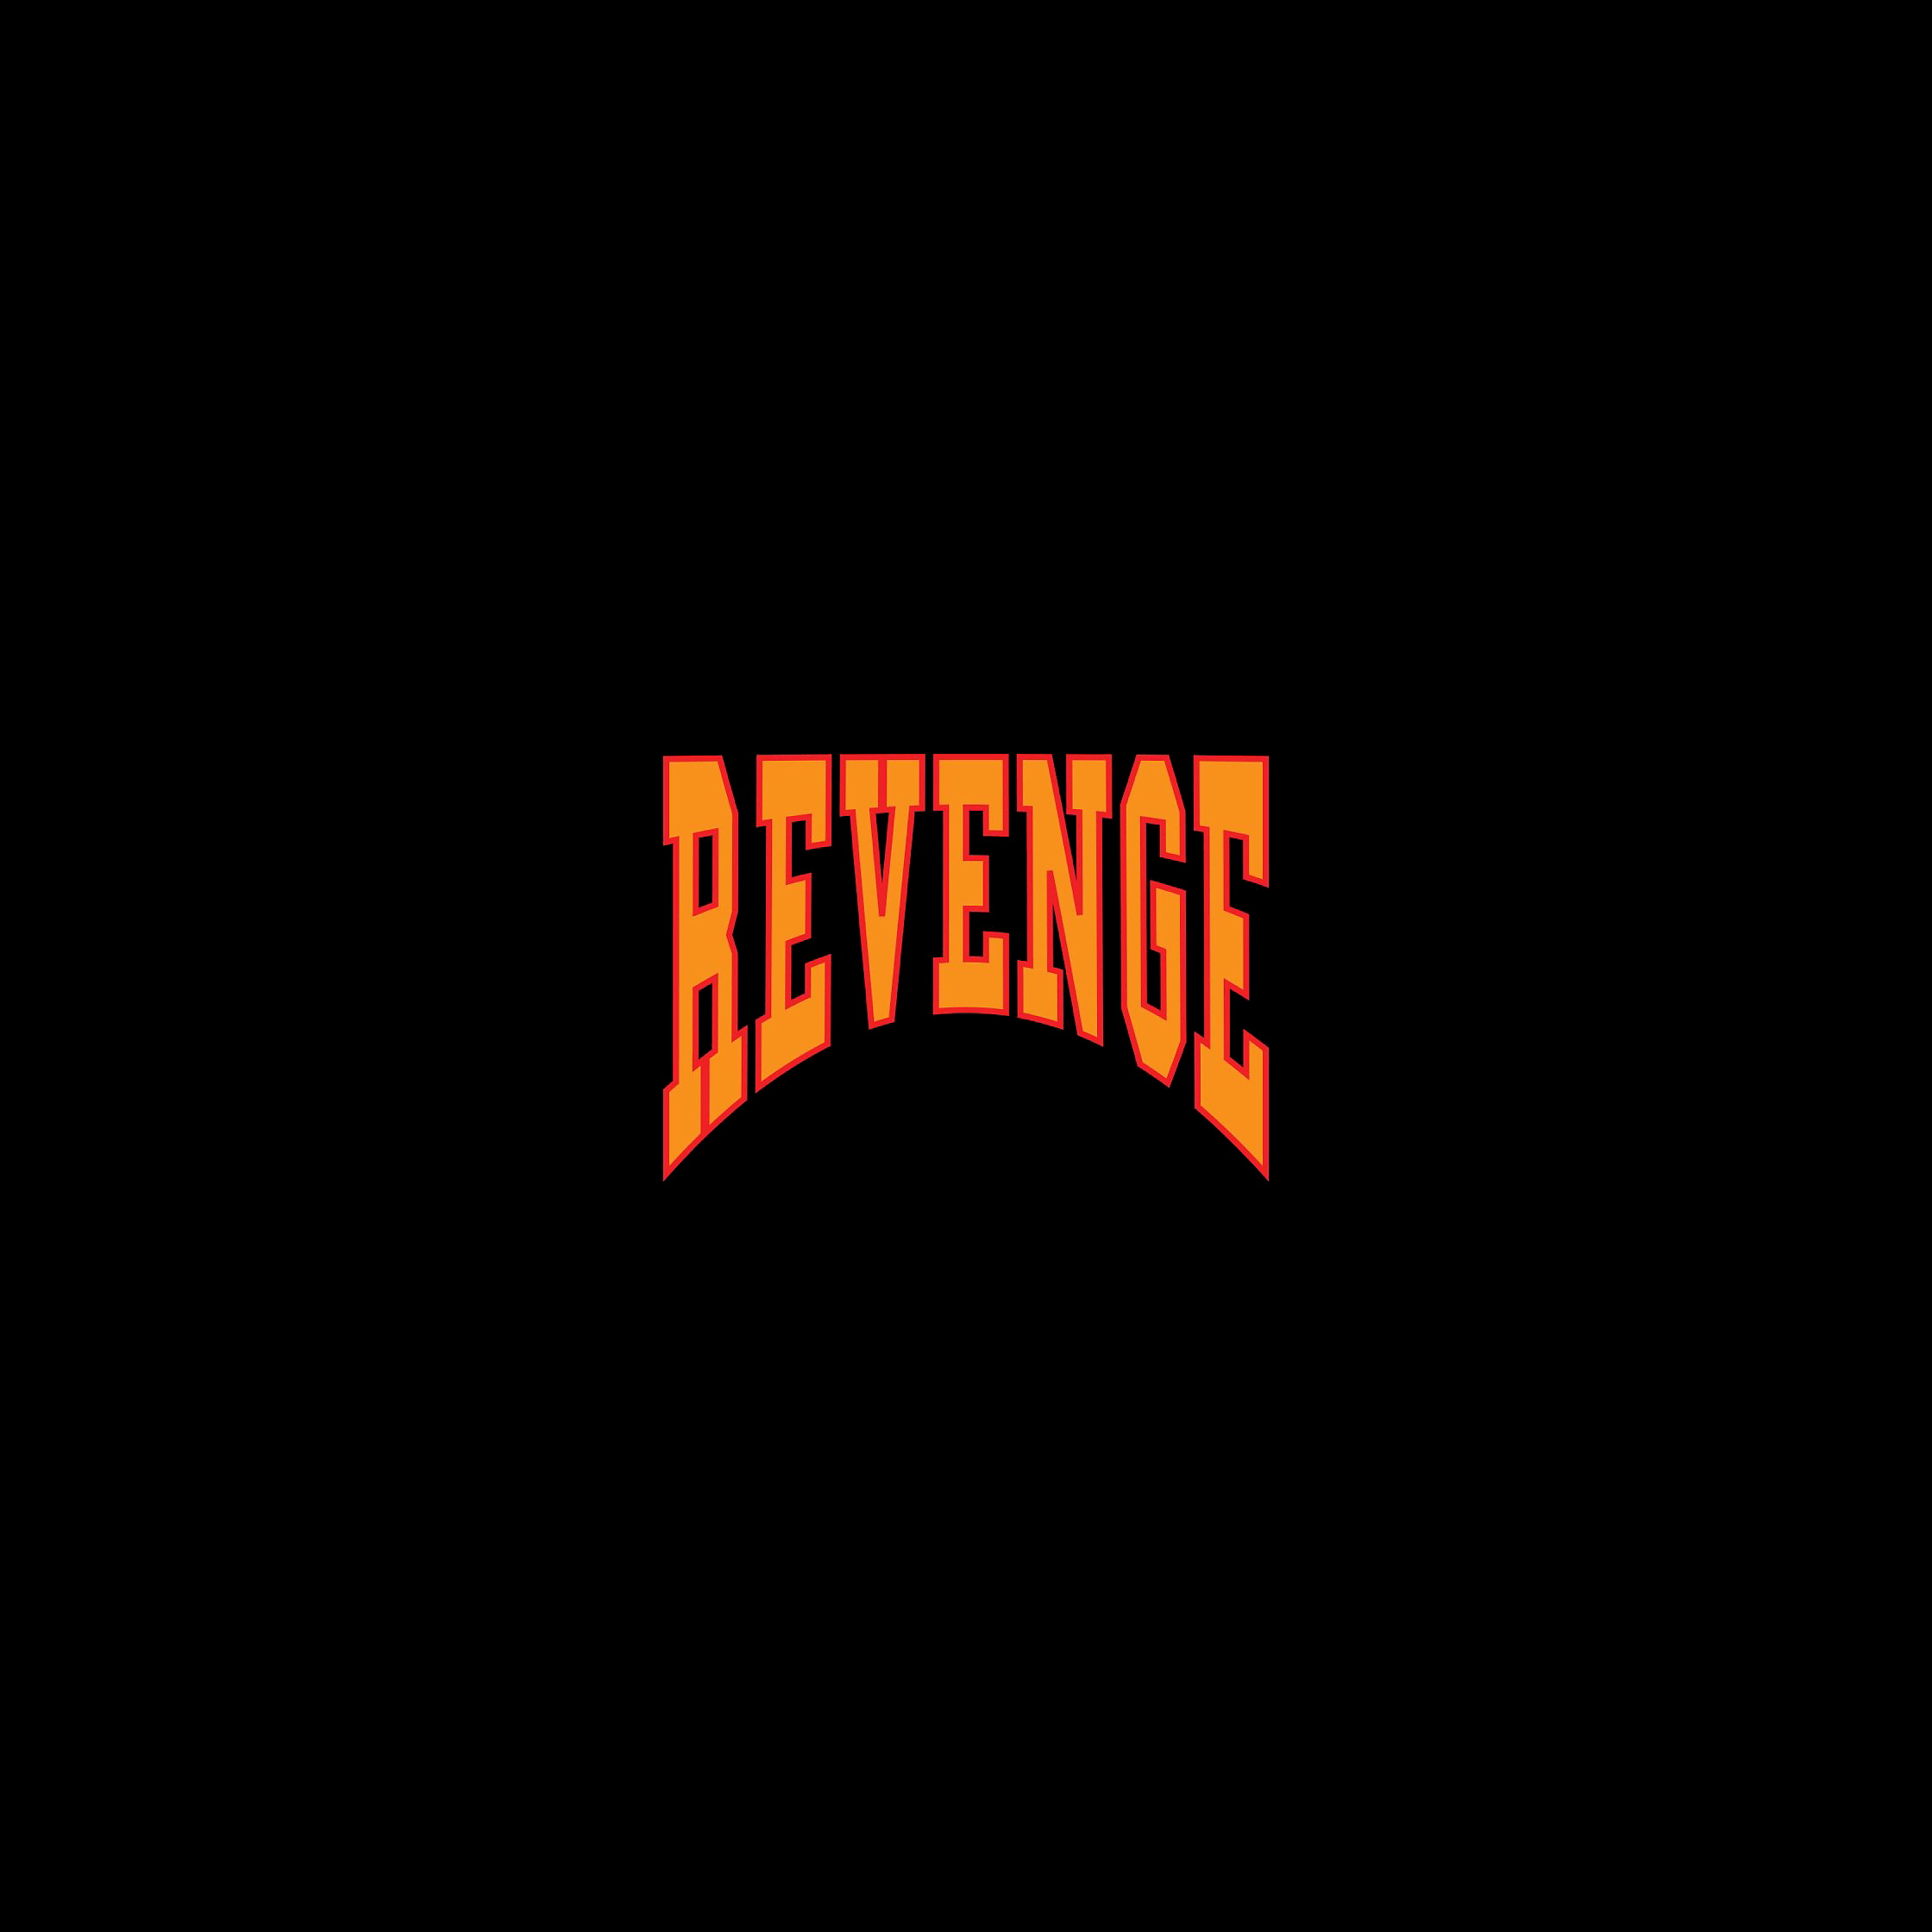 500 Revenge Pictures  Download Free Images on Unsplash